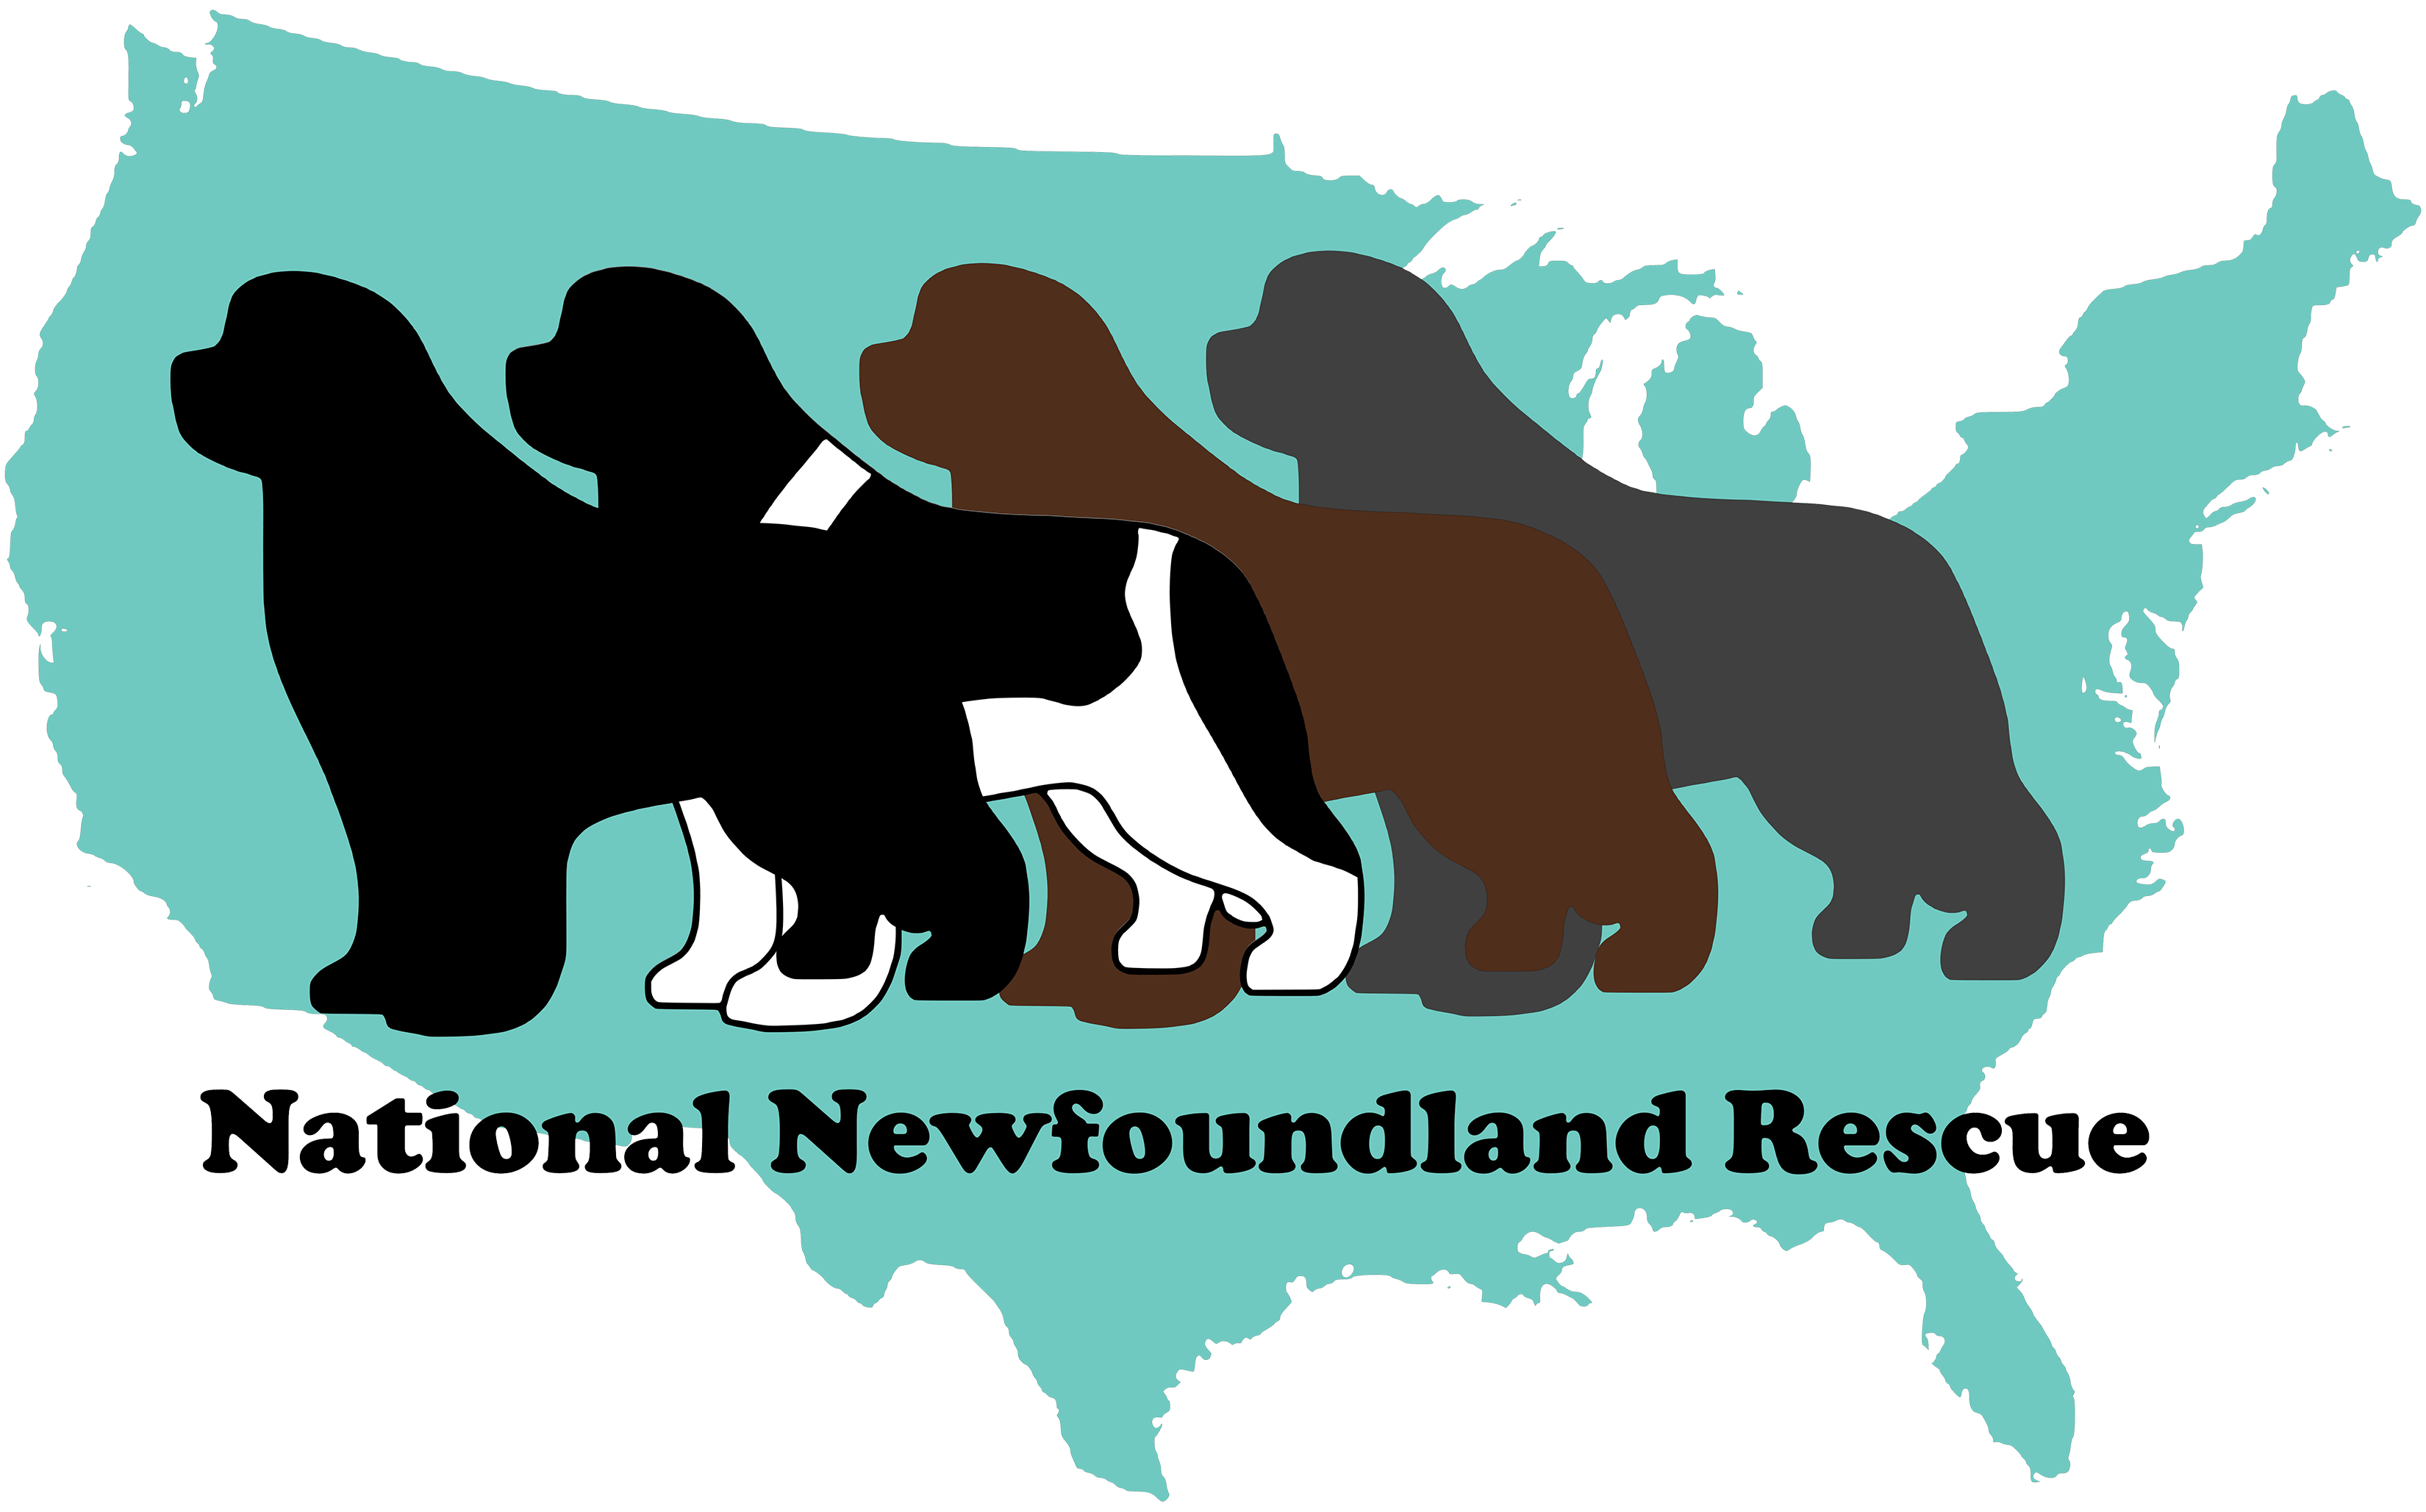 National Newfoundland Rescue Inc